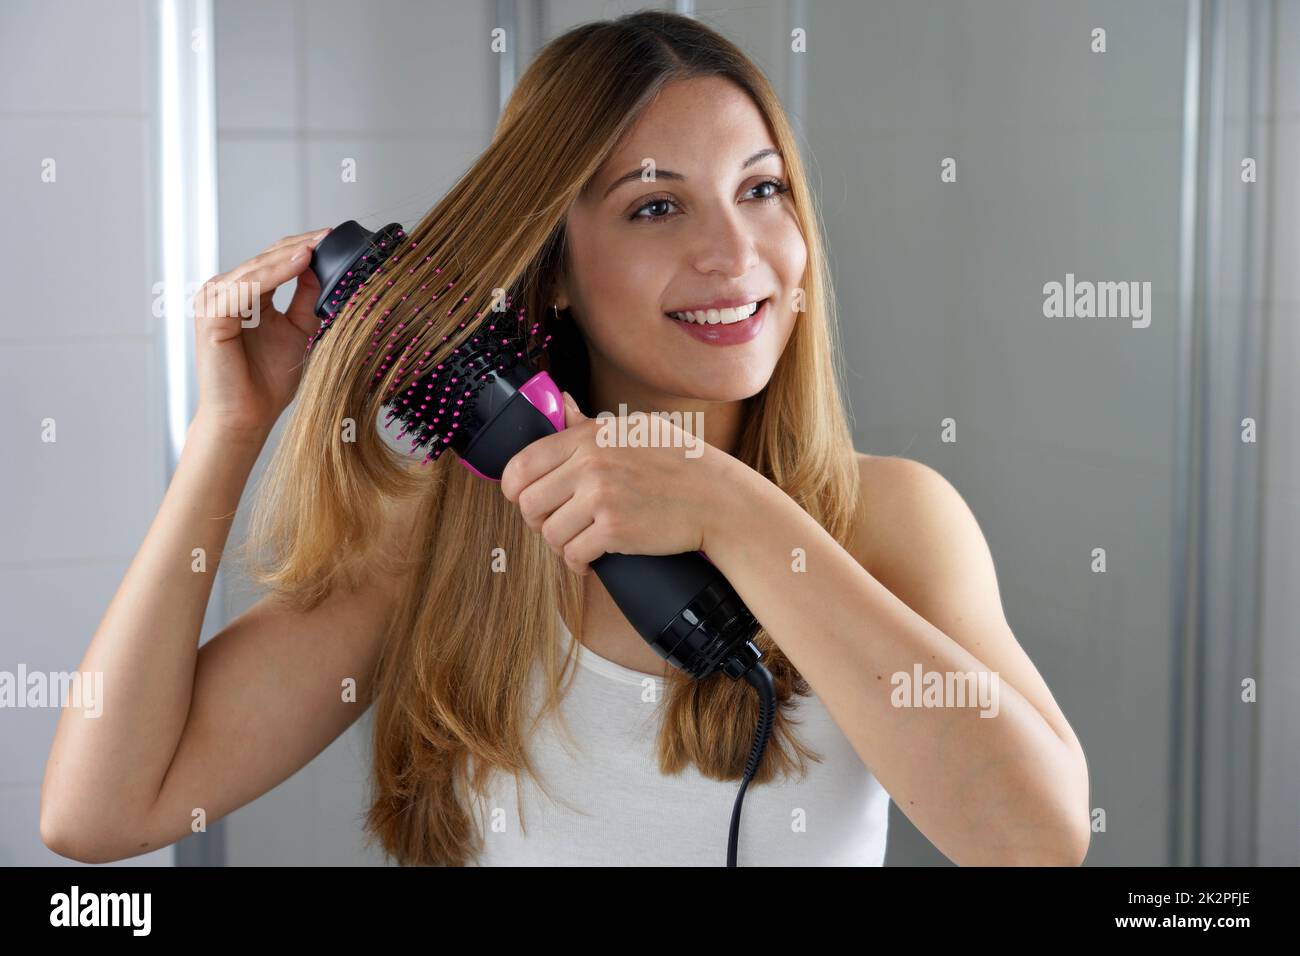 Die junge Frau hält einen runden Bürstenfon, um das Haar zu Hause auf einfache Weise zu stylen Stockfoto